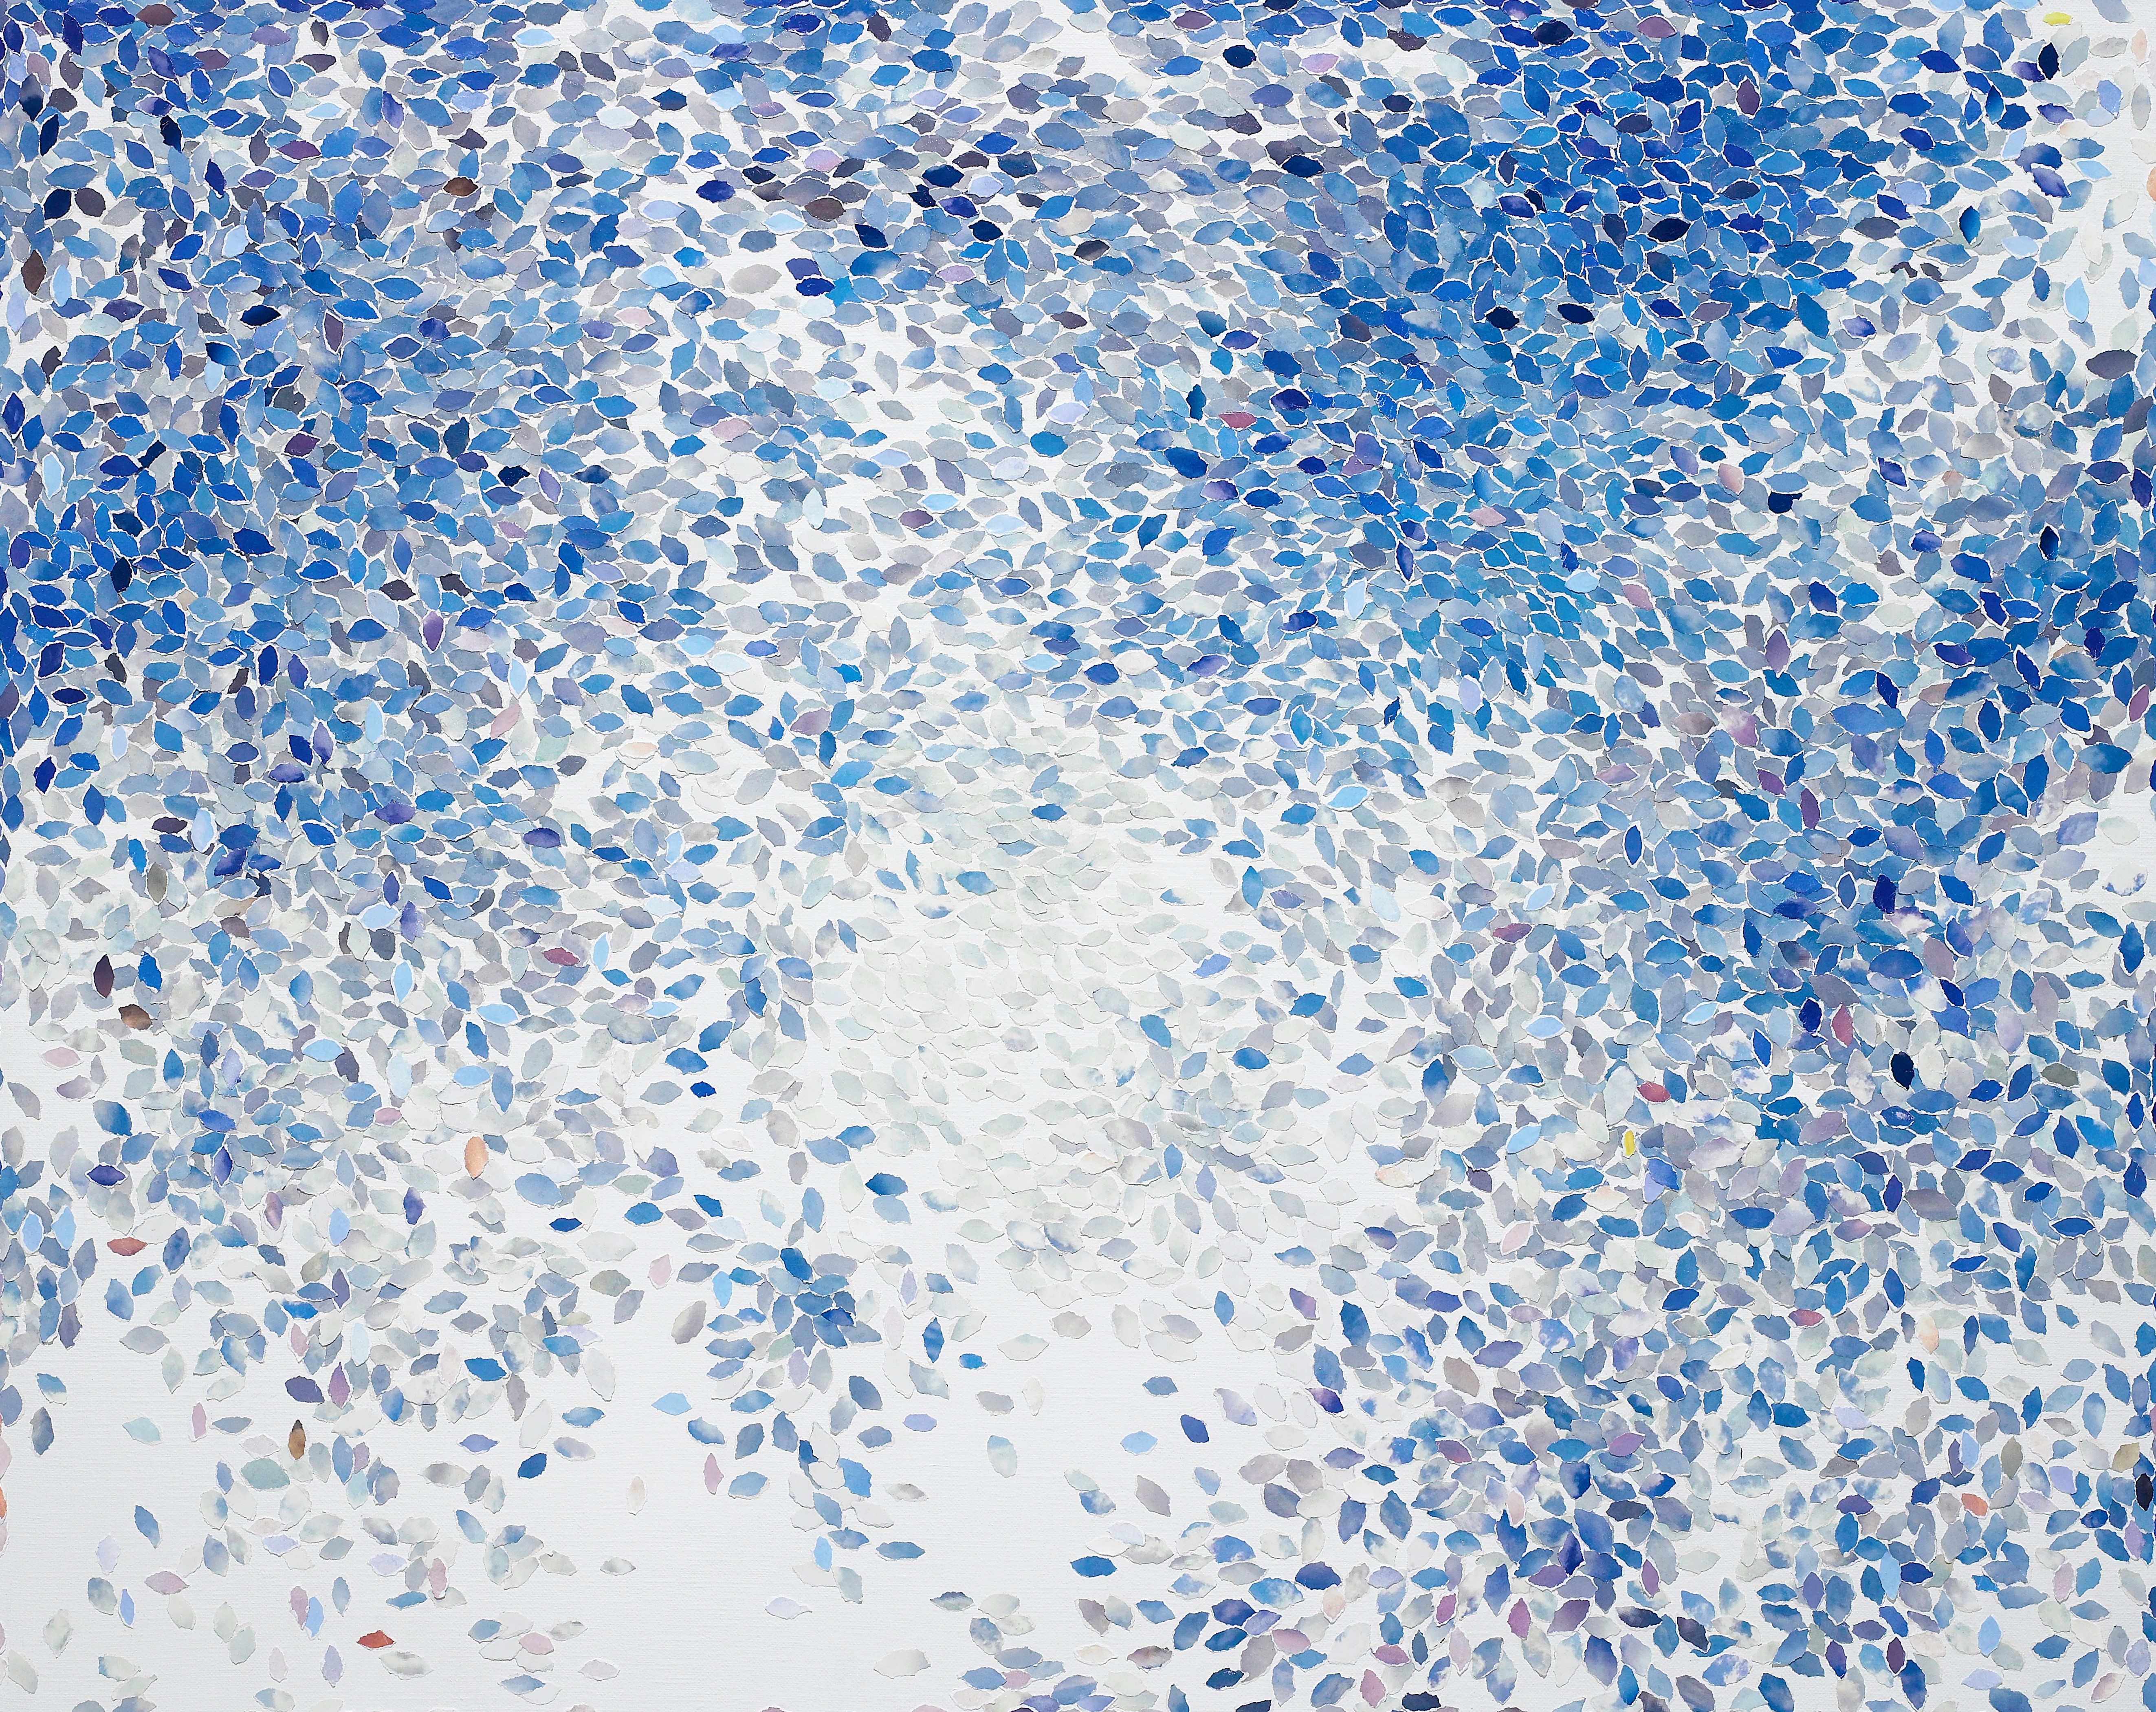 그림3-송지연_마라나타, 75×94cm, 캔버스위에 하늘사진_ 모자이크, 2020 (1).jpg